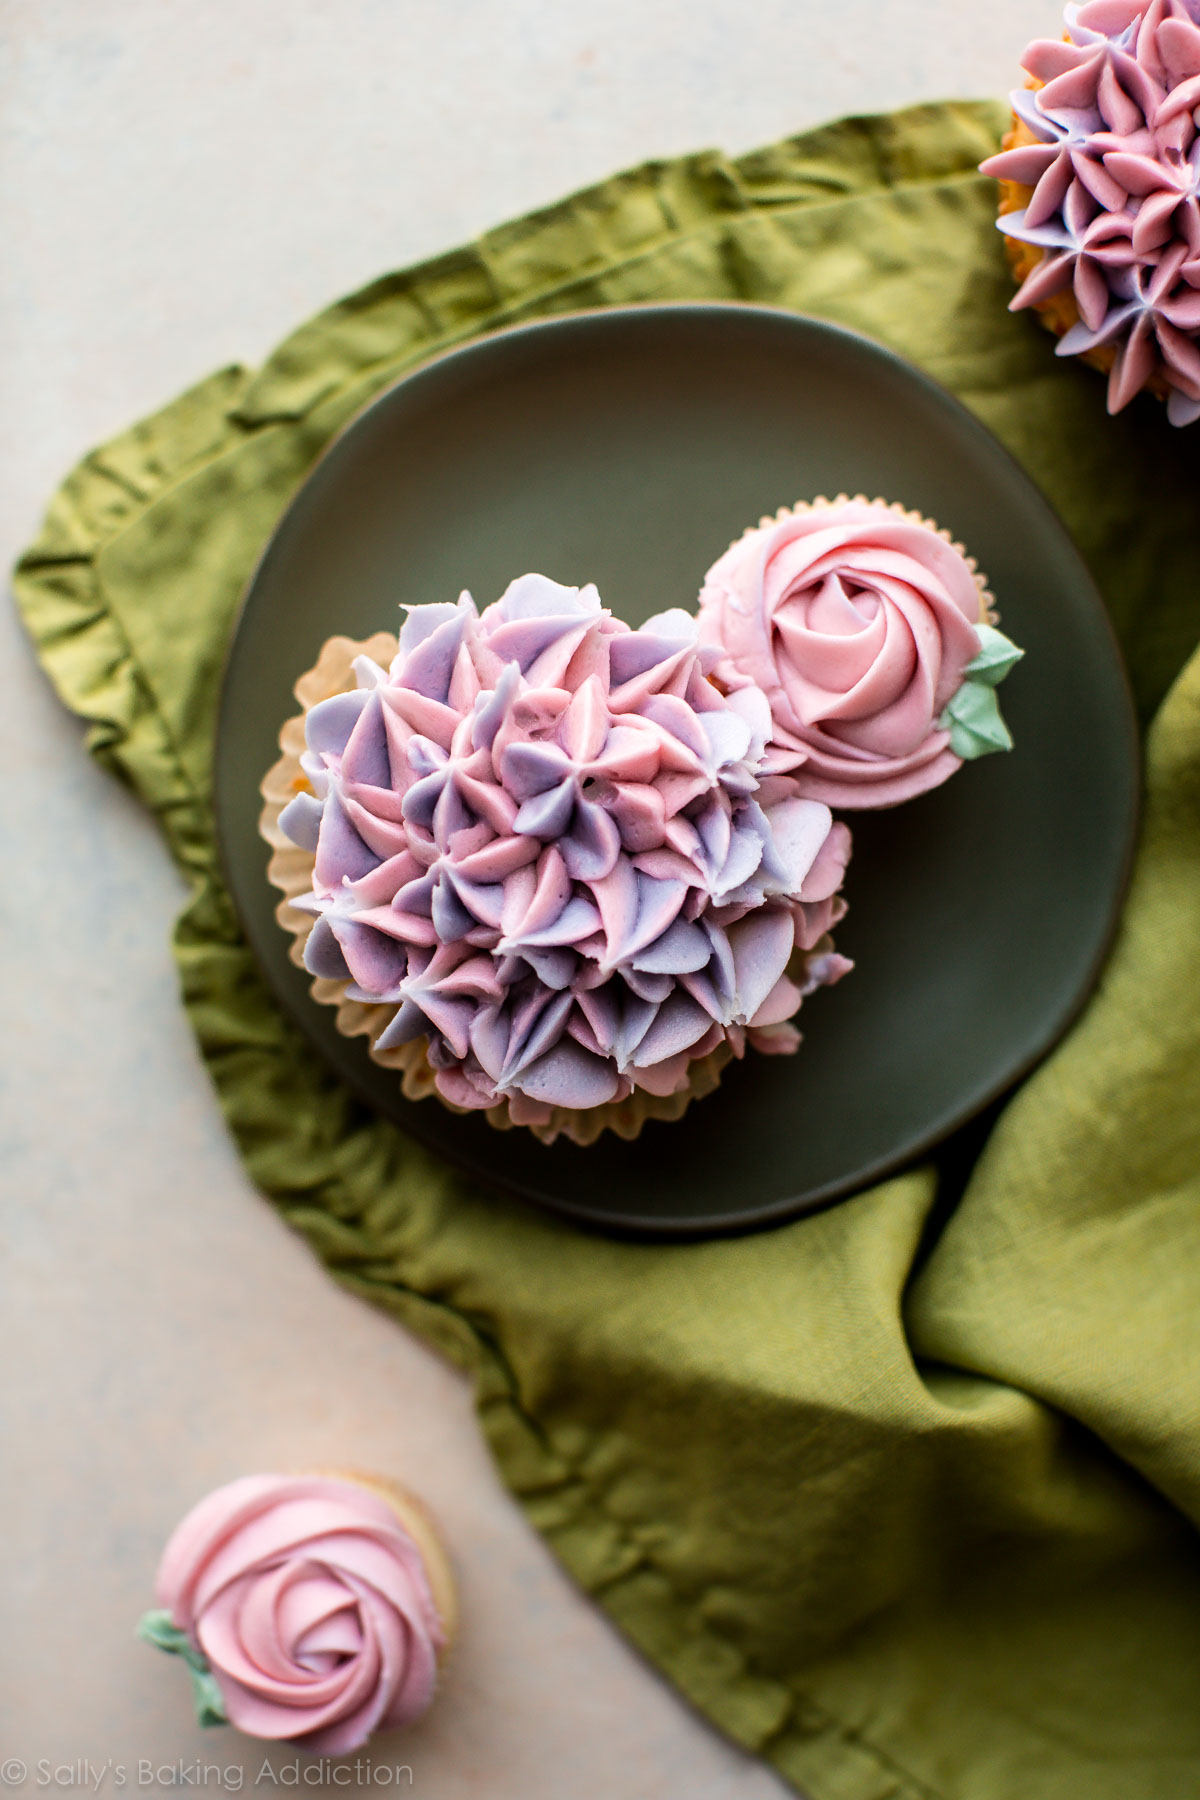 Comment faire un bouquet de cupcakes avec des cupcakes roses décorés et des cupcakes d'hortensia! Tutoriel vidéo sur sallysbakingaddiction.com